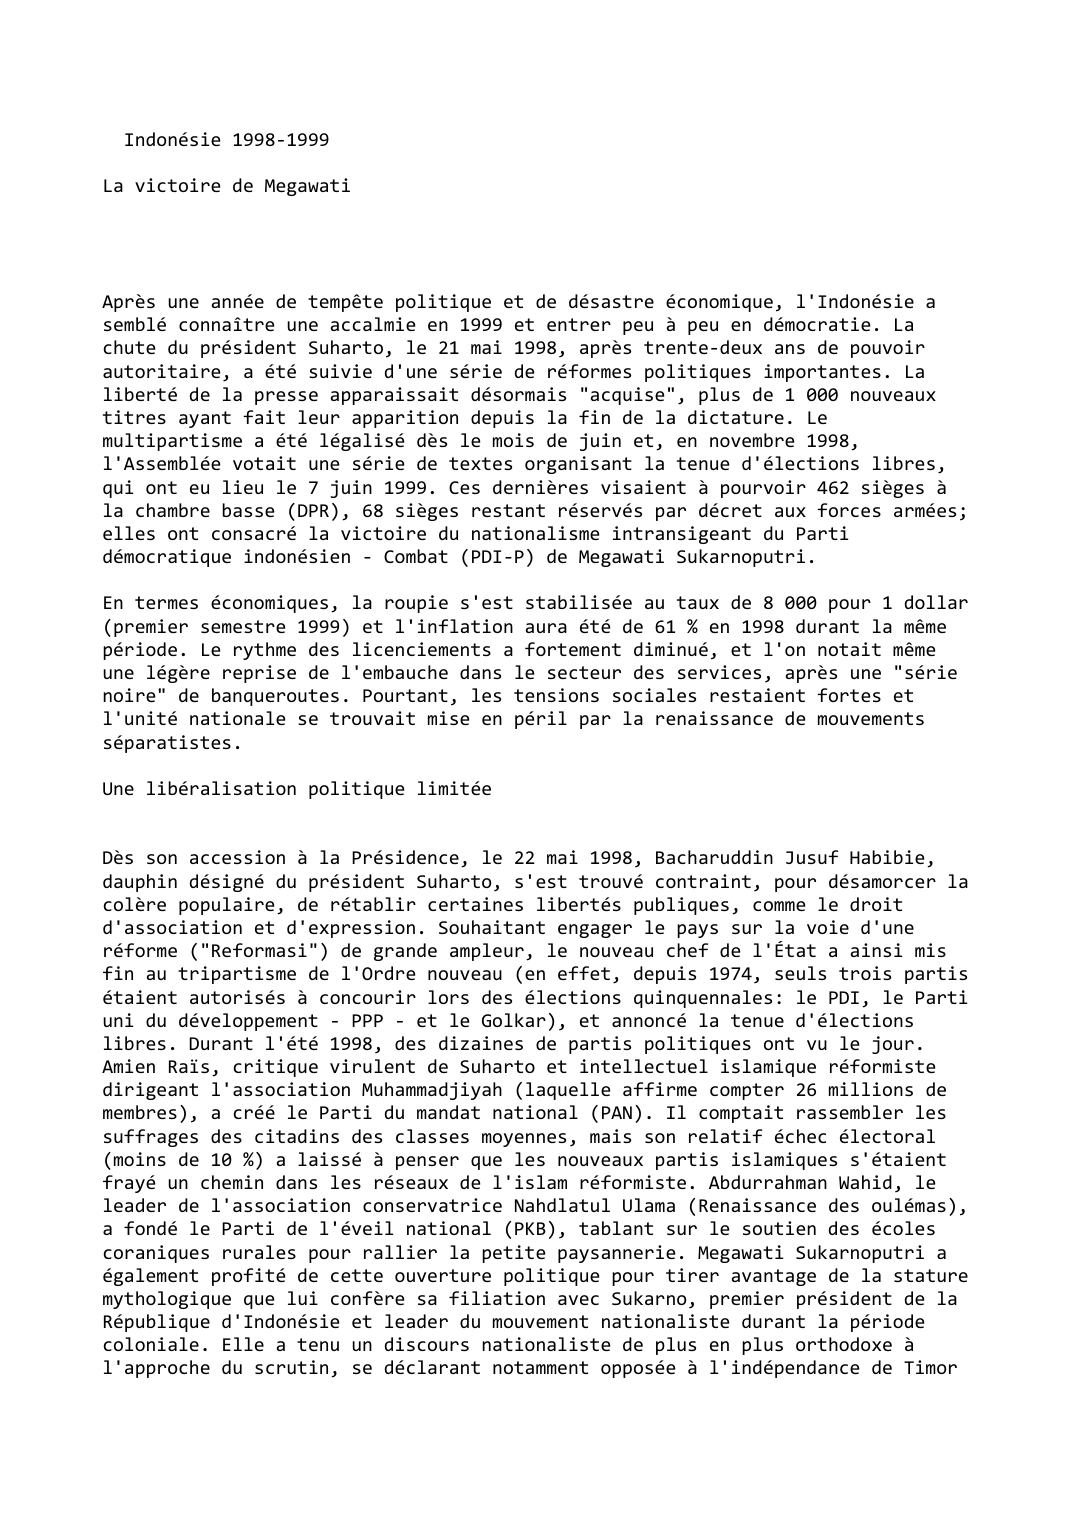 Prévisualisation du document Indonésie 1998-1999

La victoire de Megawati